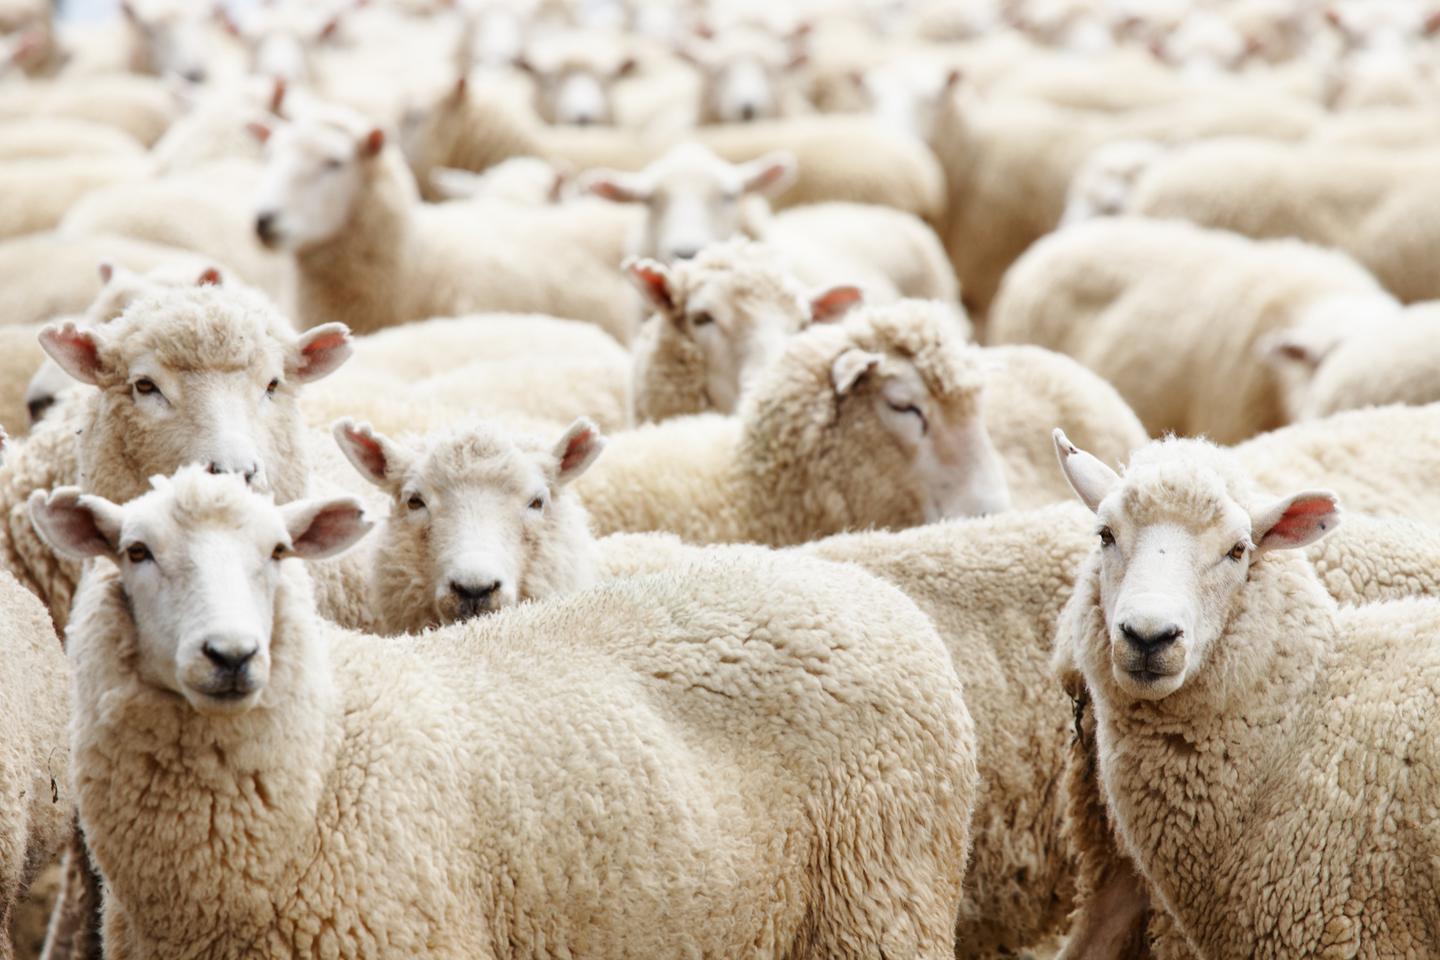 Viele Schafe in einer Gruppe auf dem Feld.